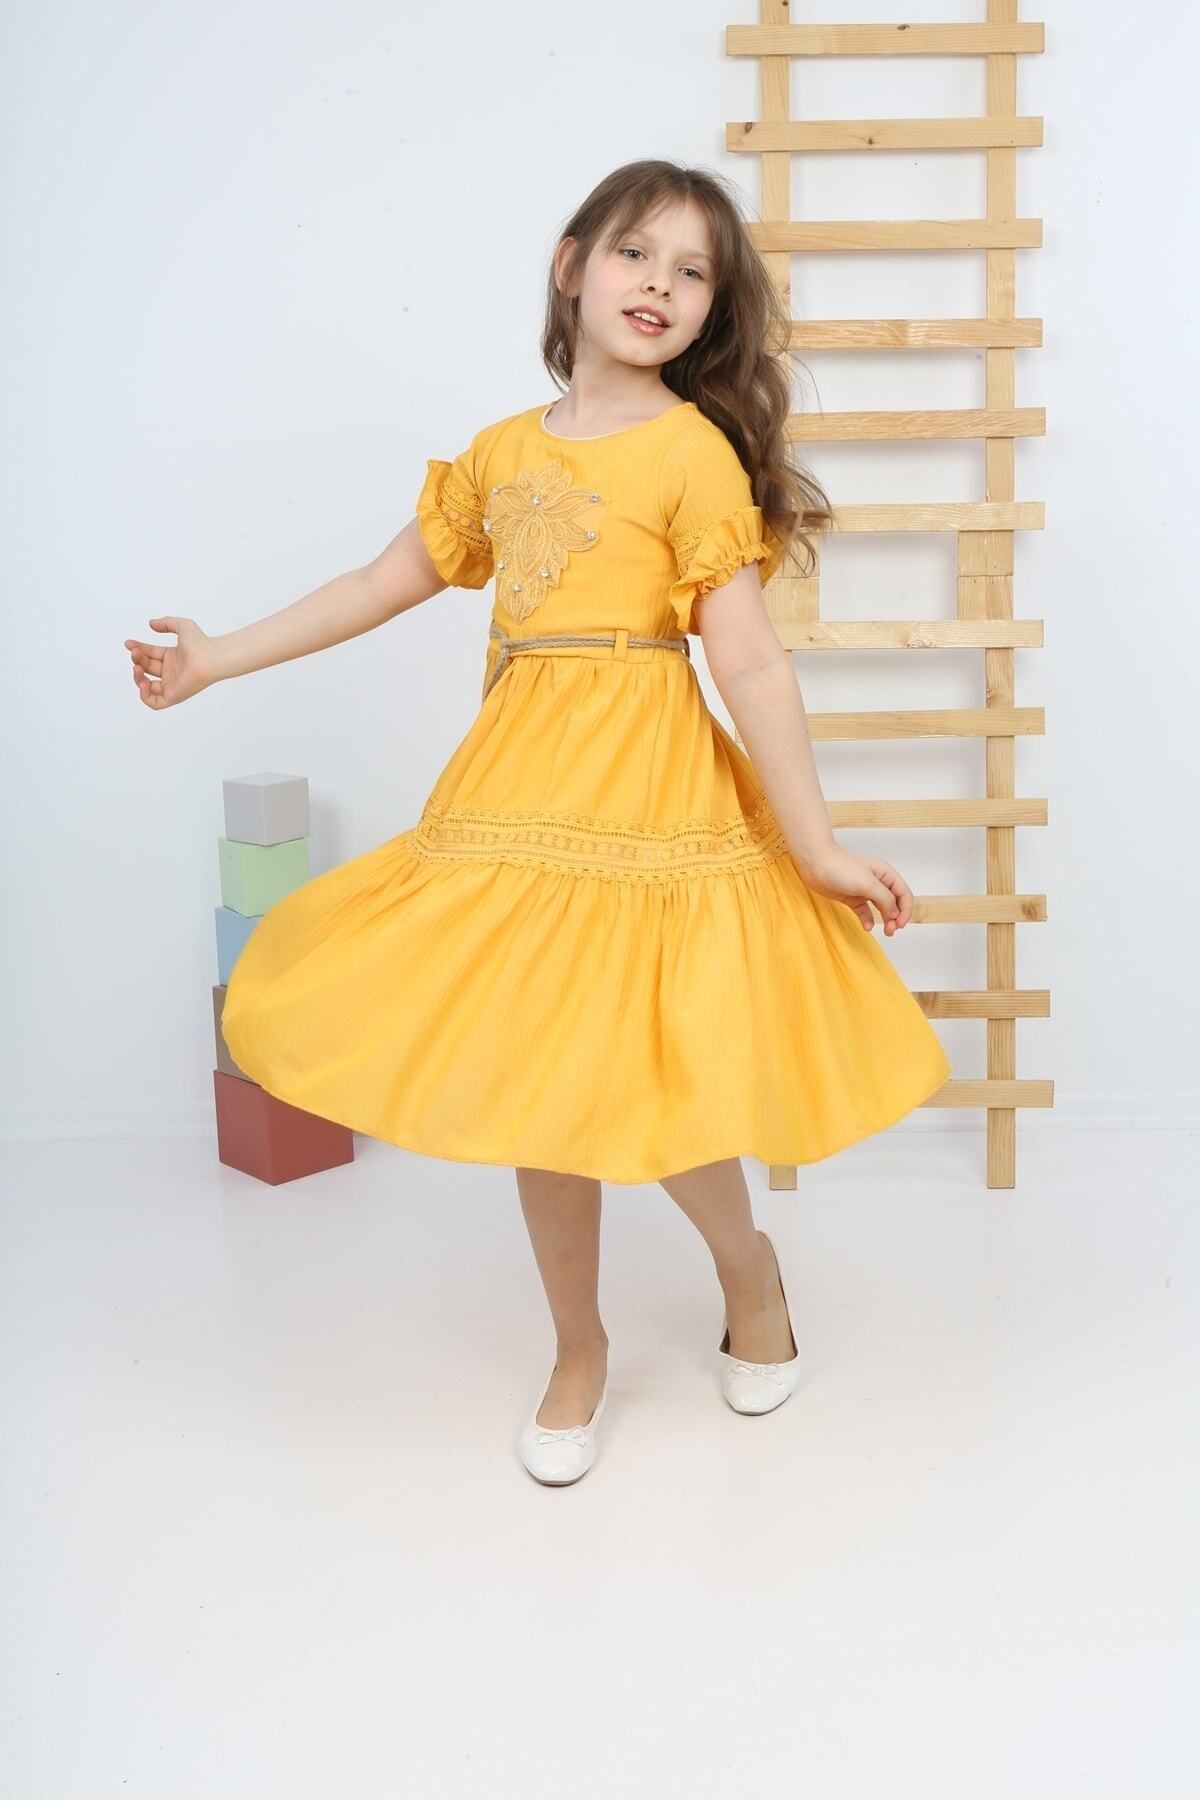 şımarık kids Kız Çocuk Sarı Kol Etek Dantelli Elbise